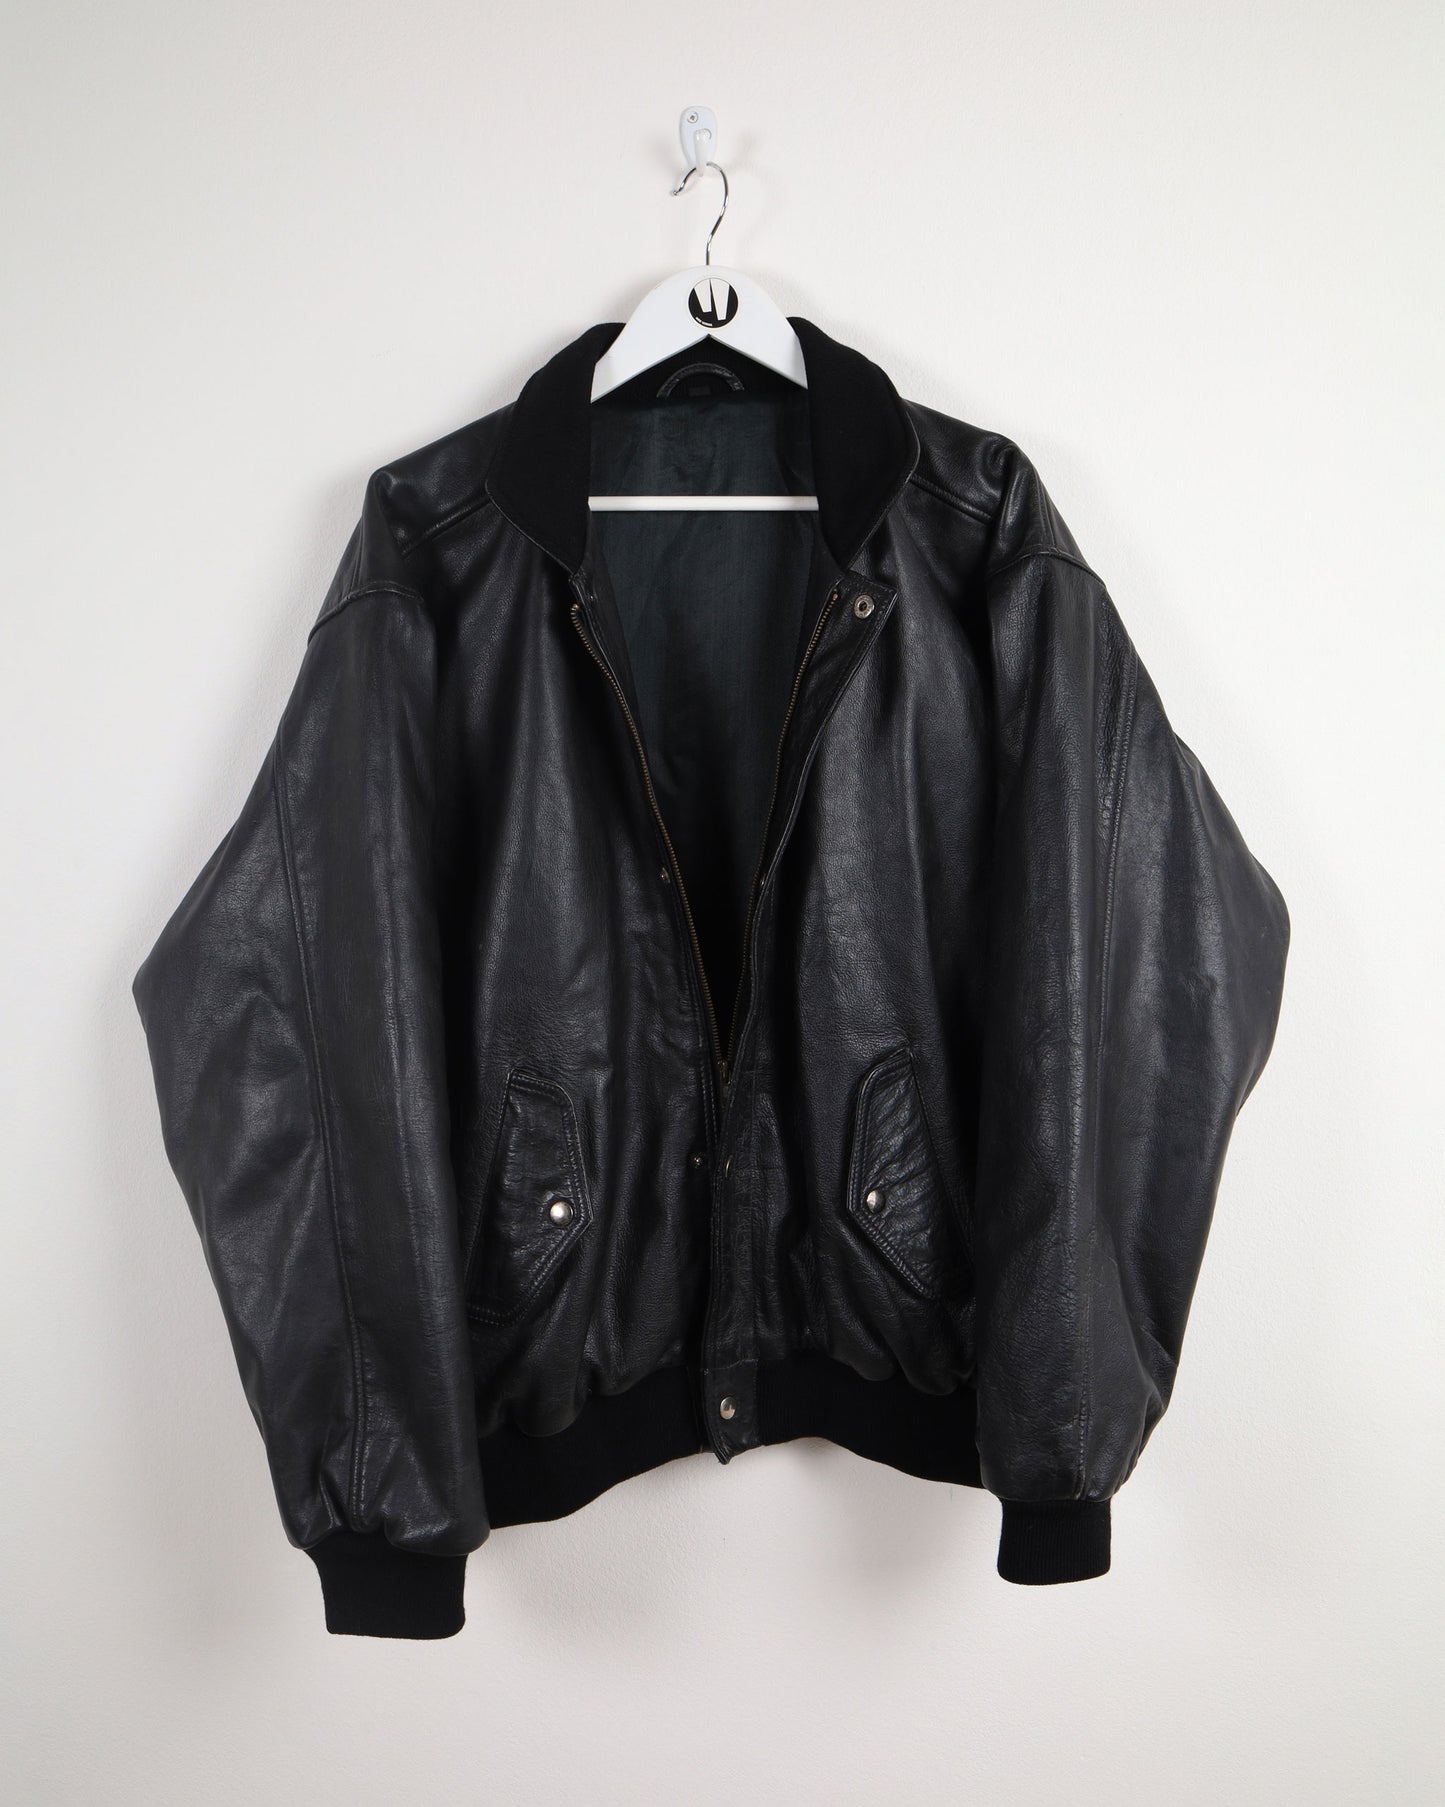 Vintage Bomber Leather Jacket